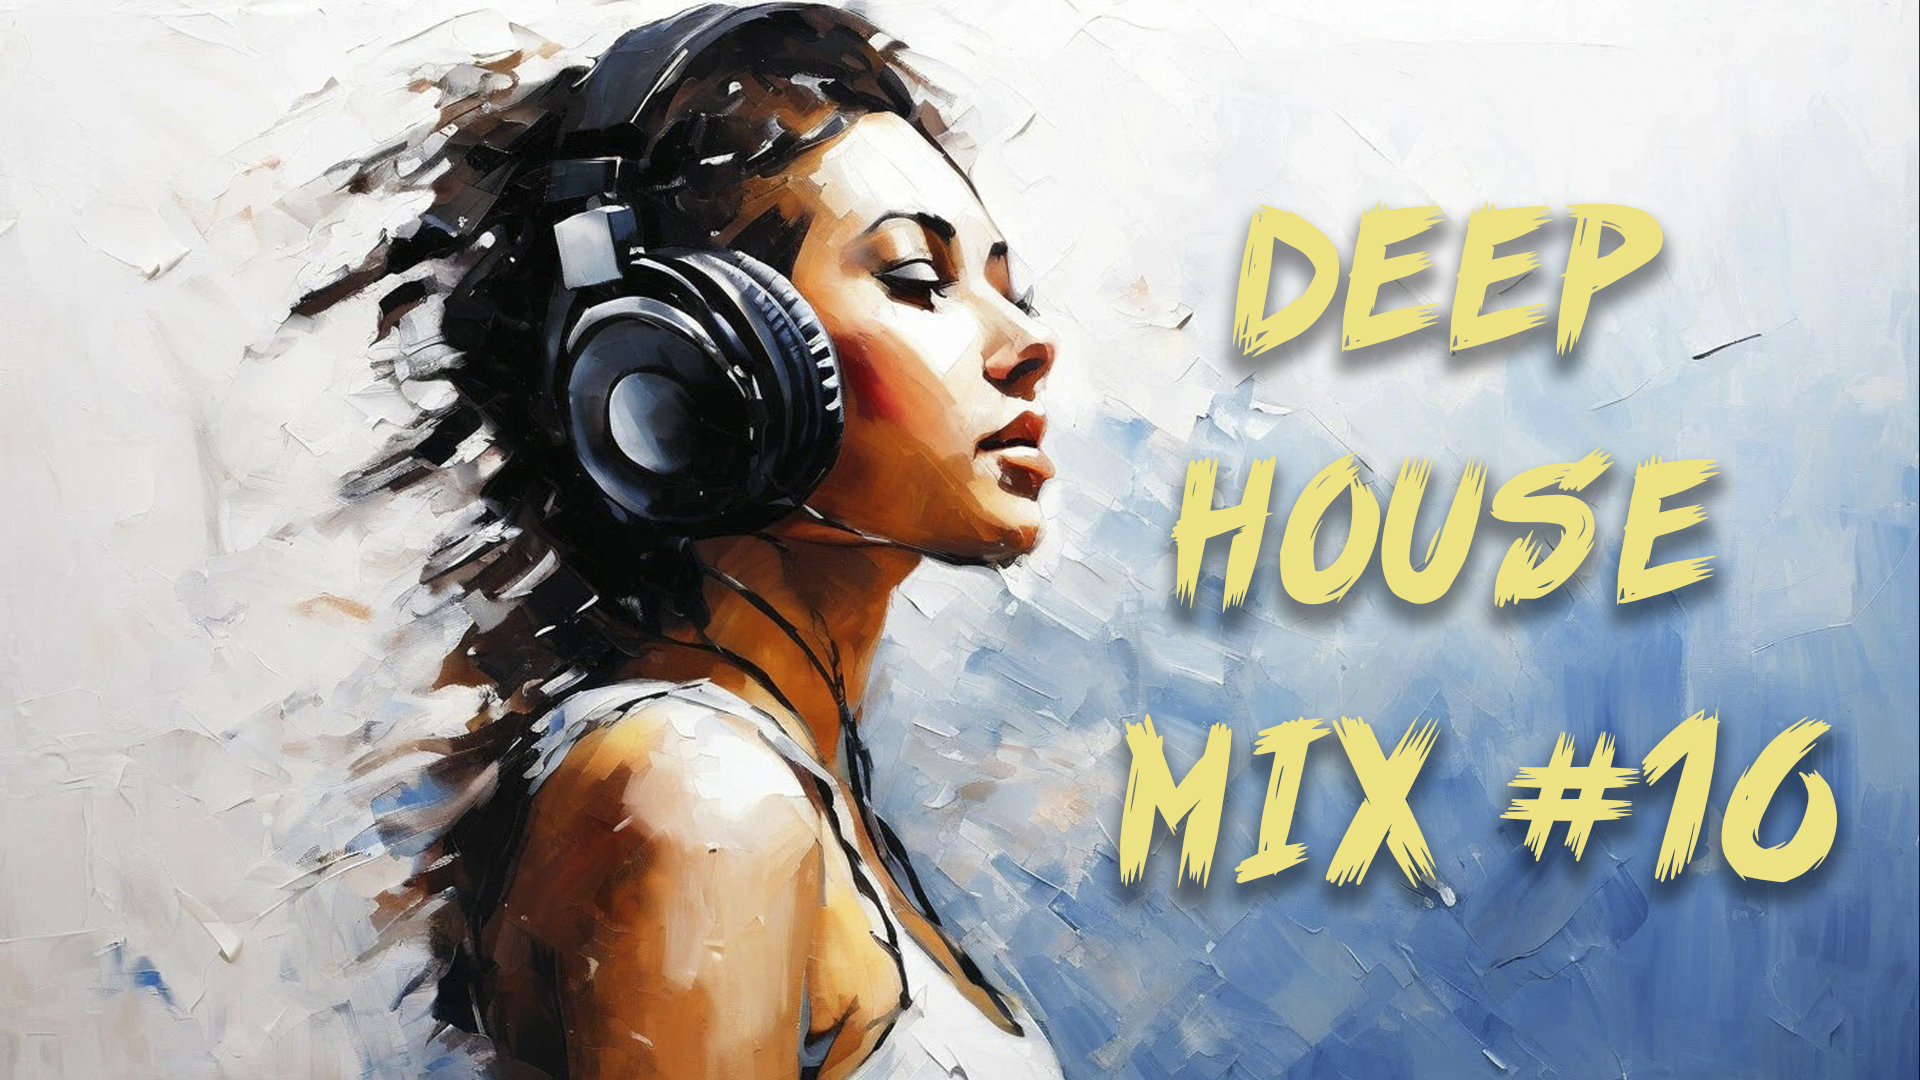 Deep house mix #16